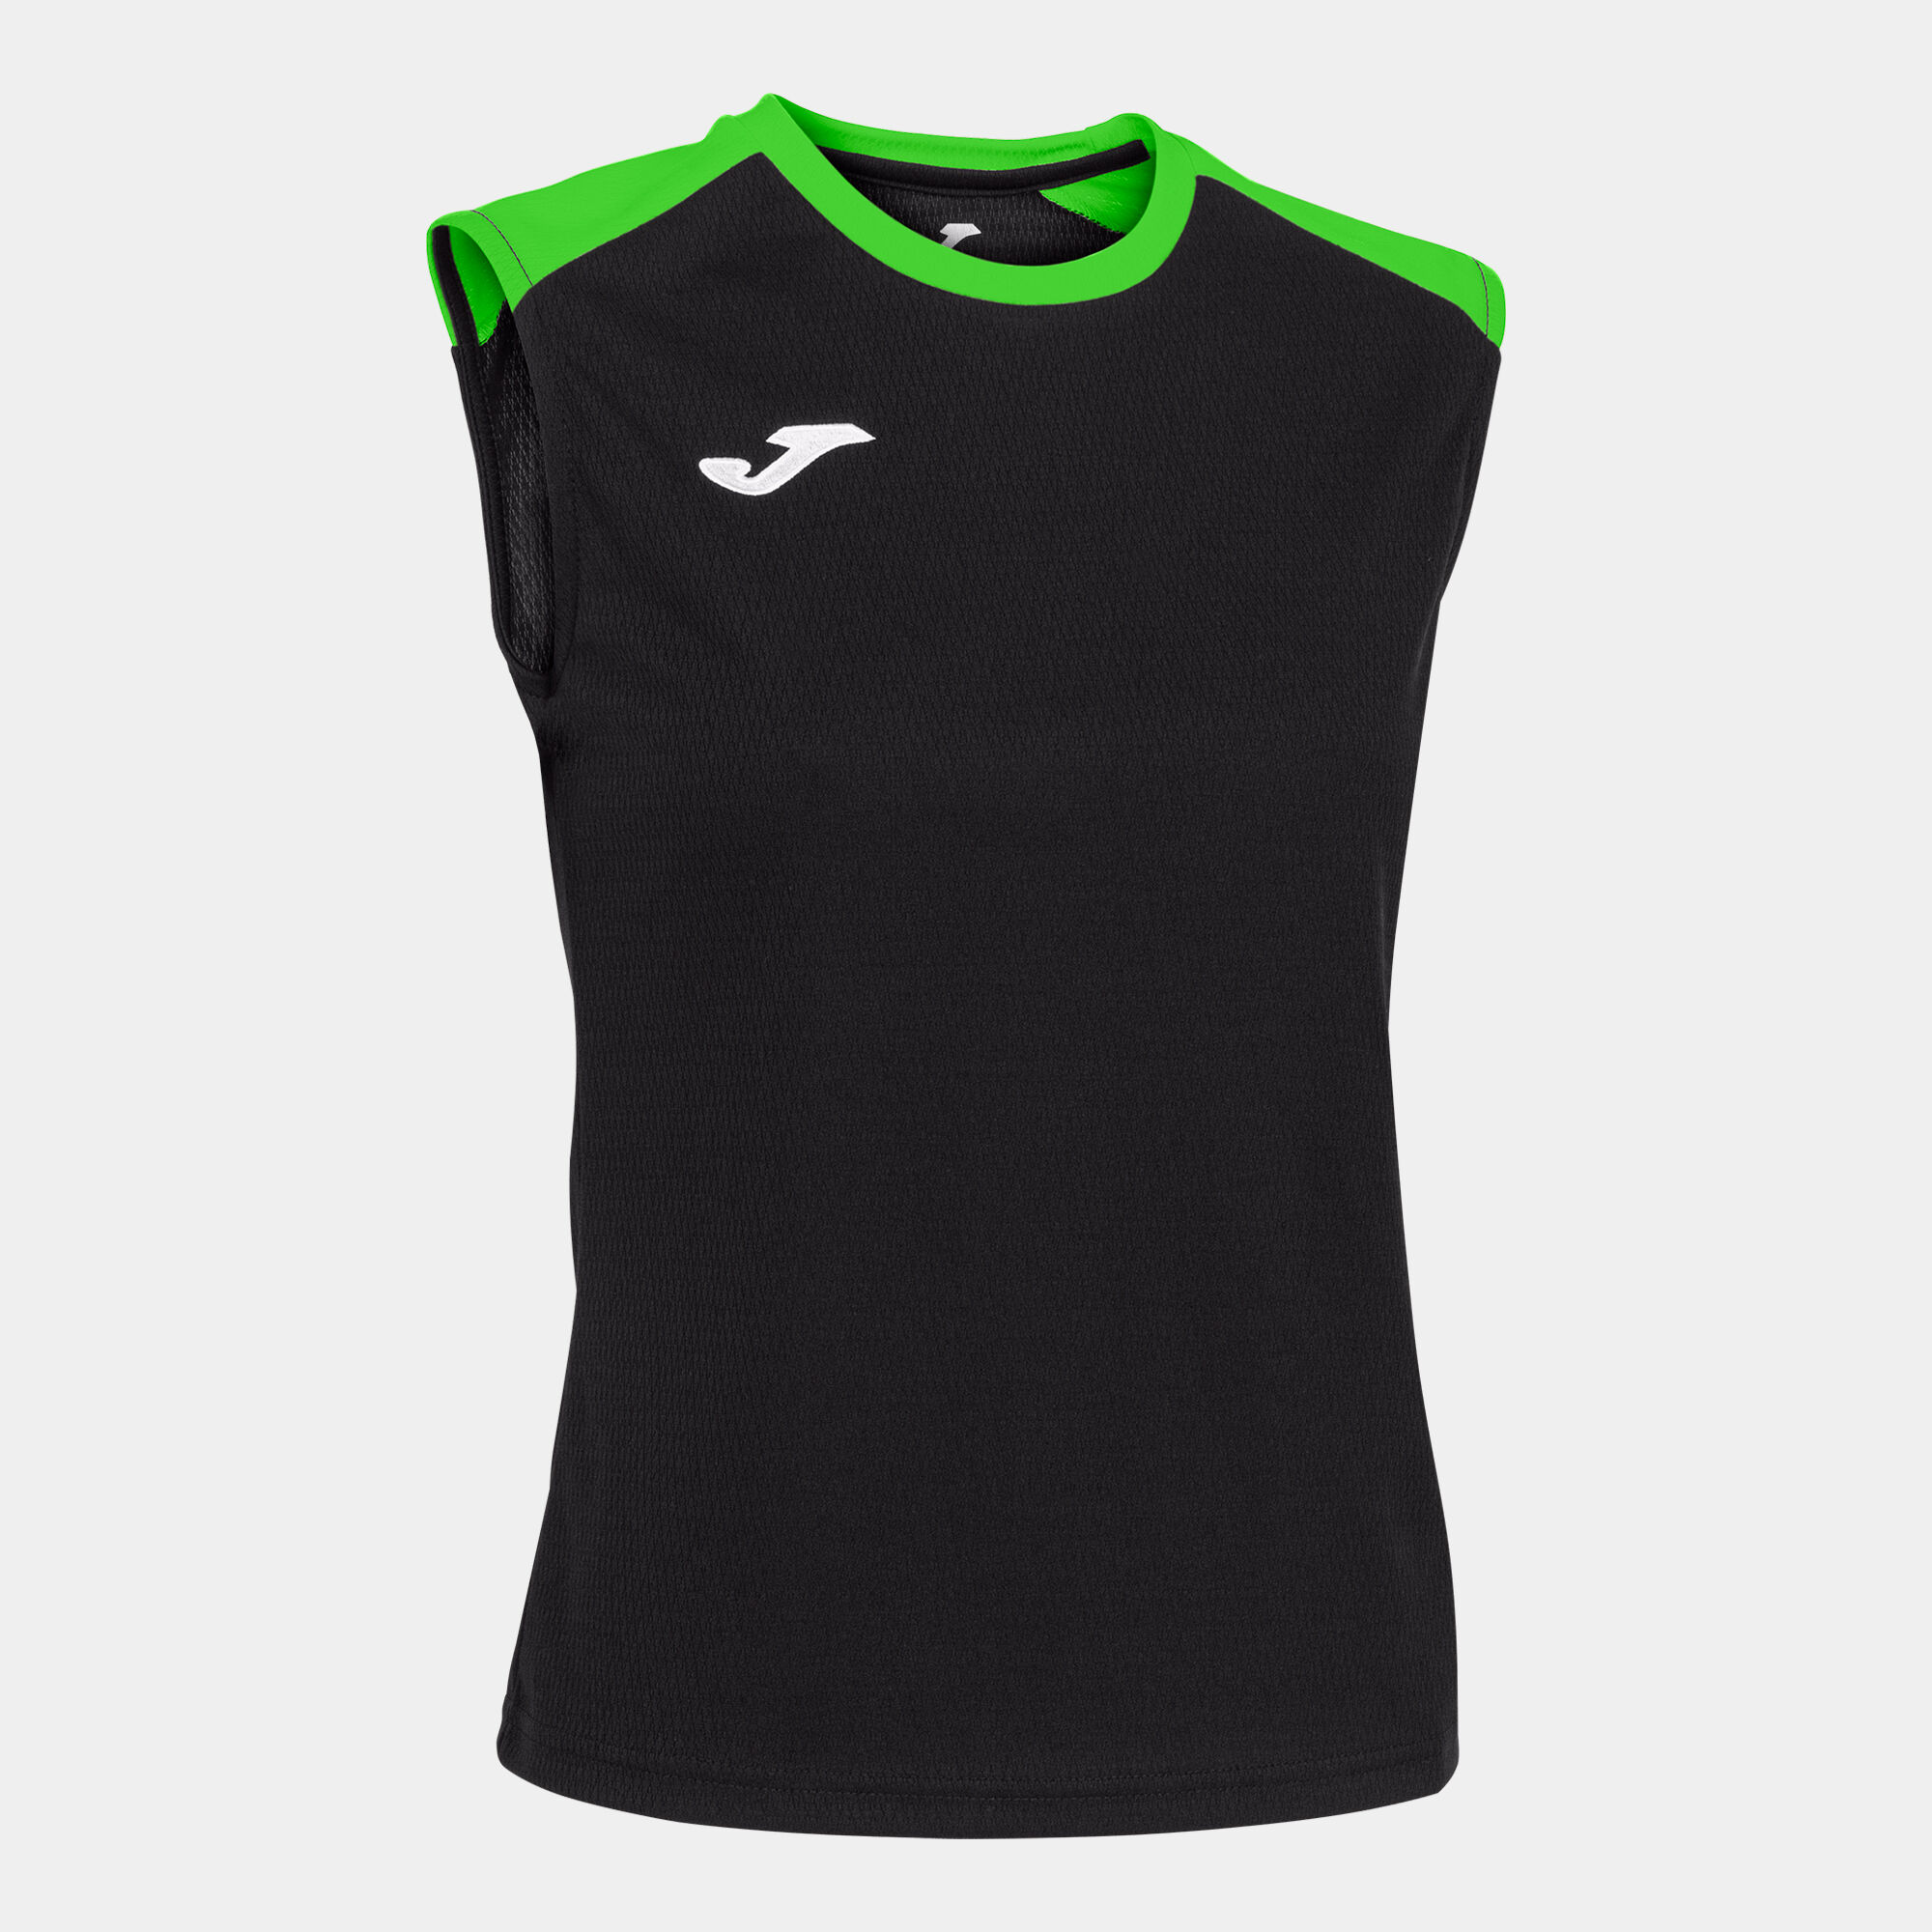 Schulterriemen-shirt frau Eco Championship schwarz neongrün